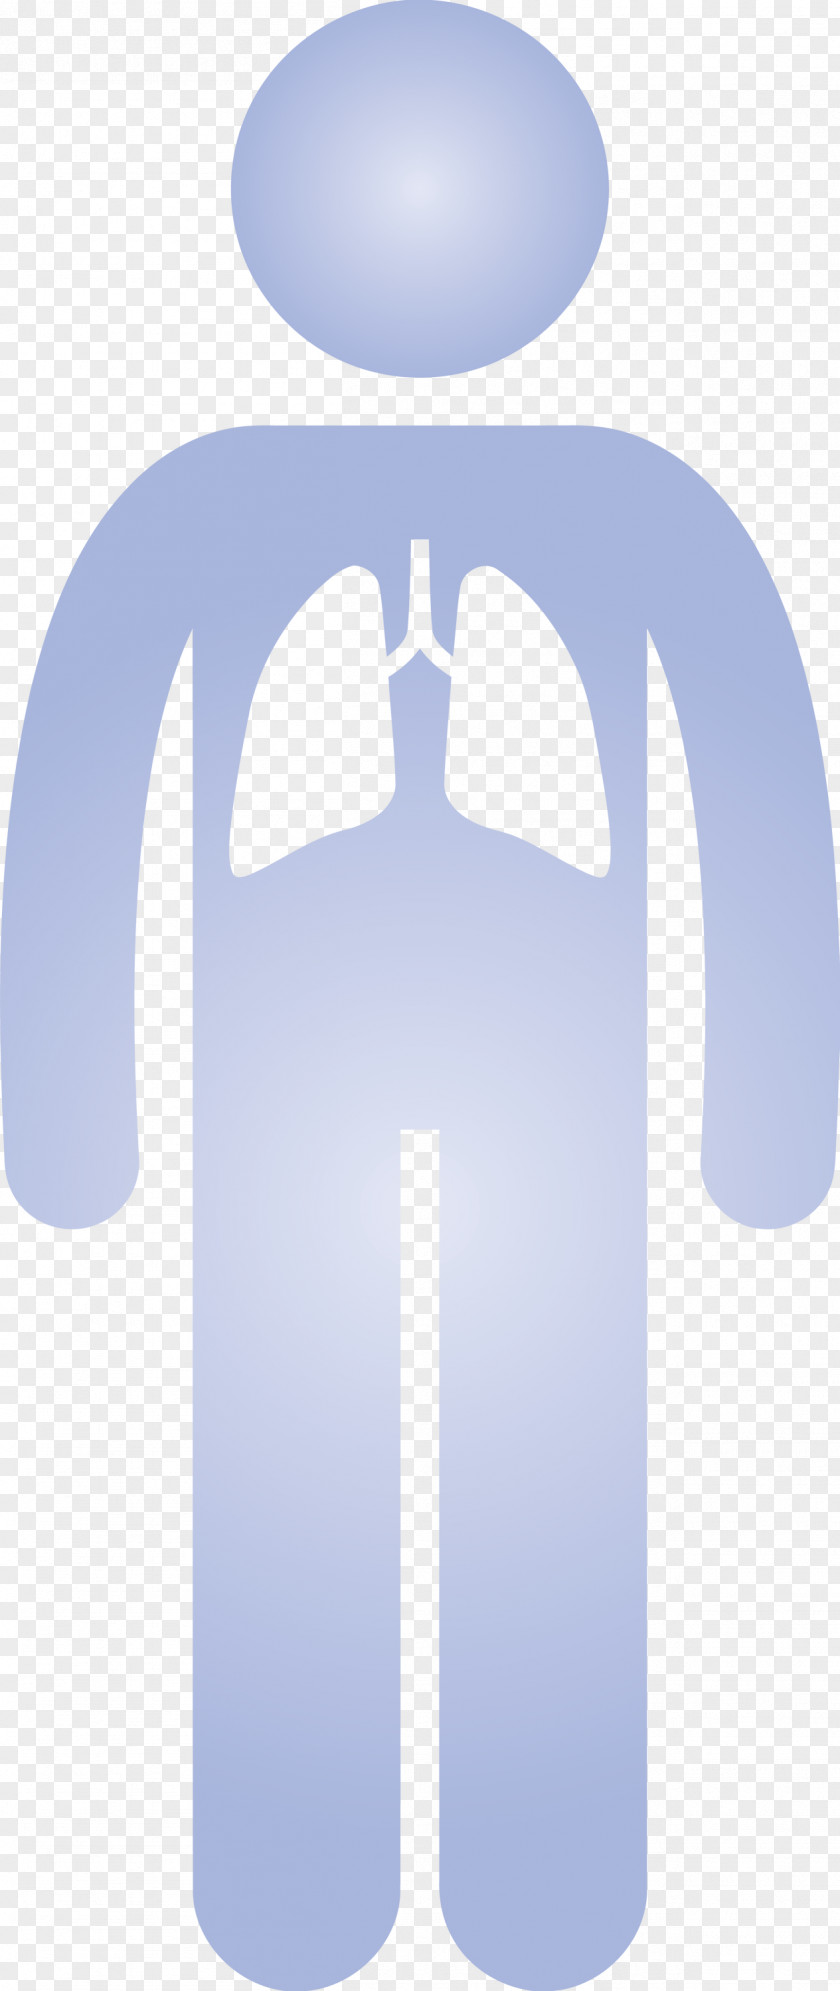 Lungs People Corona Virus Disease PNG